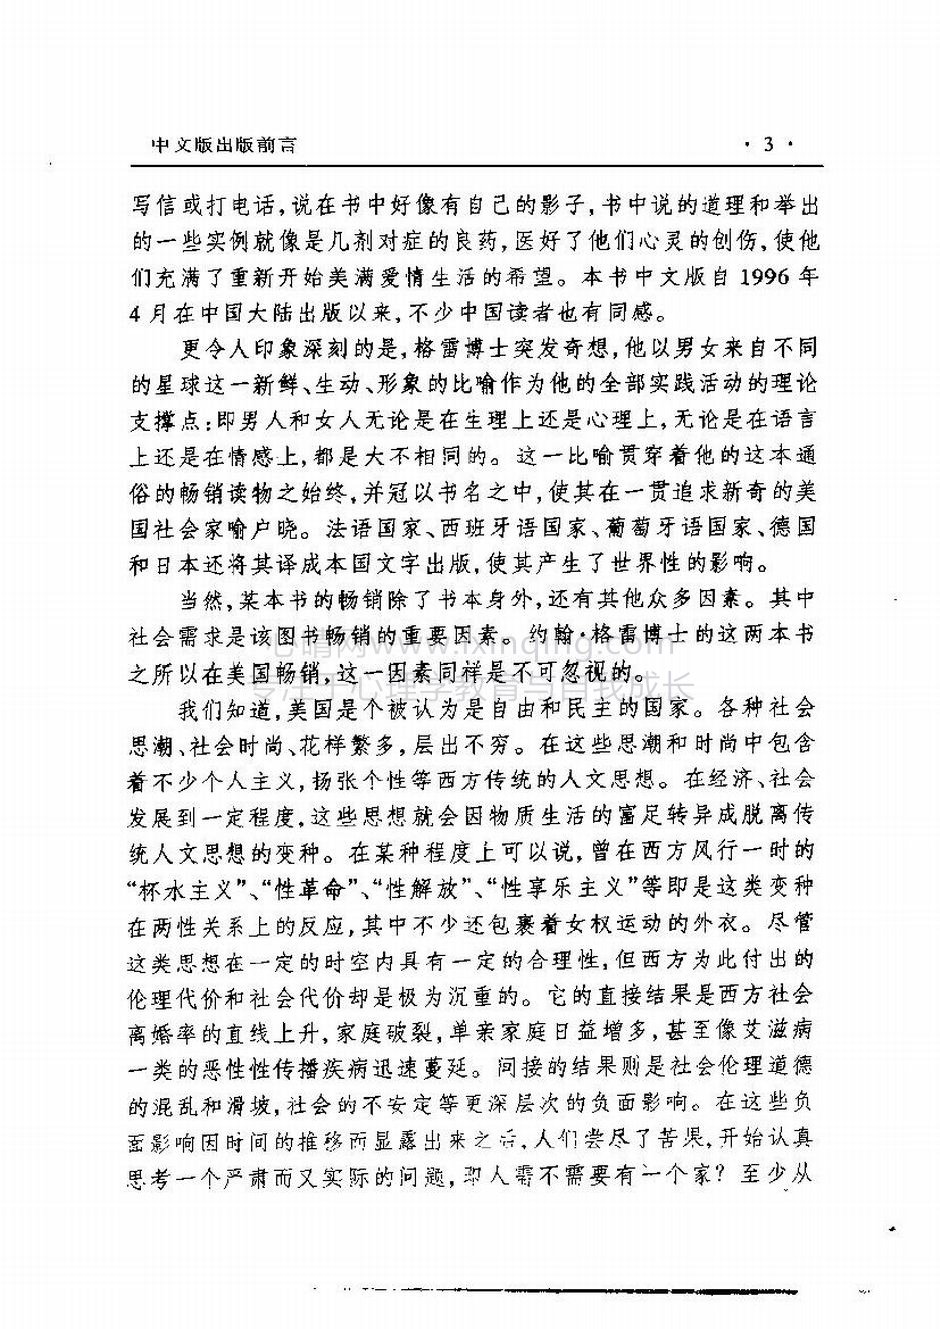 封面、原序、译序、中文版出版前言(7)